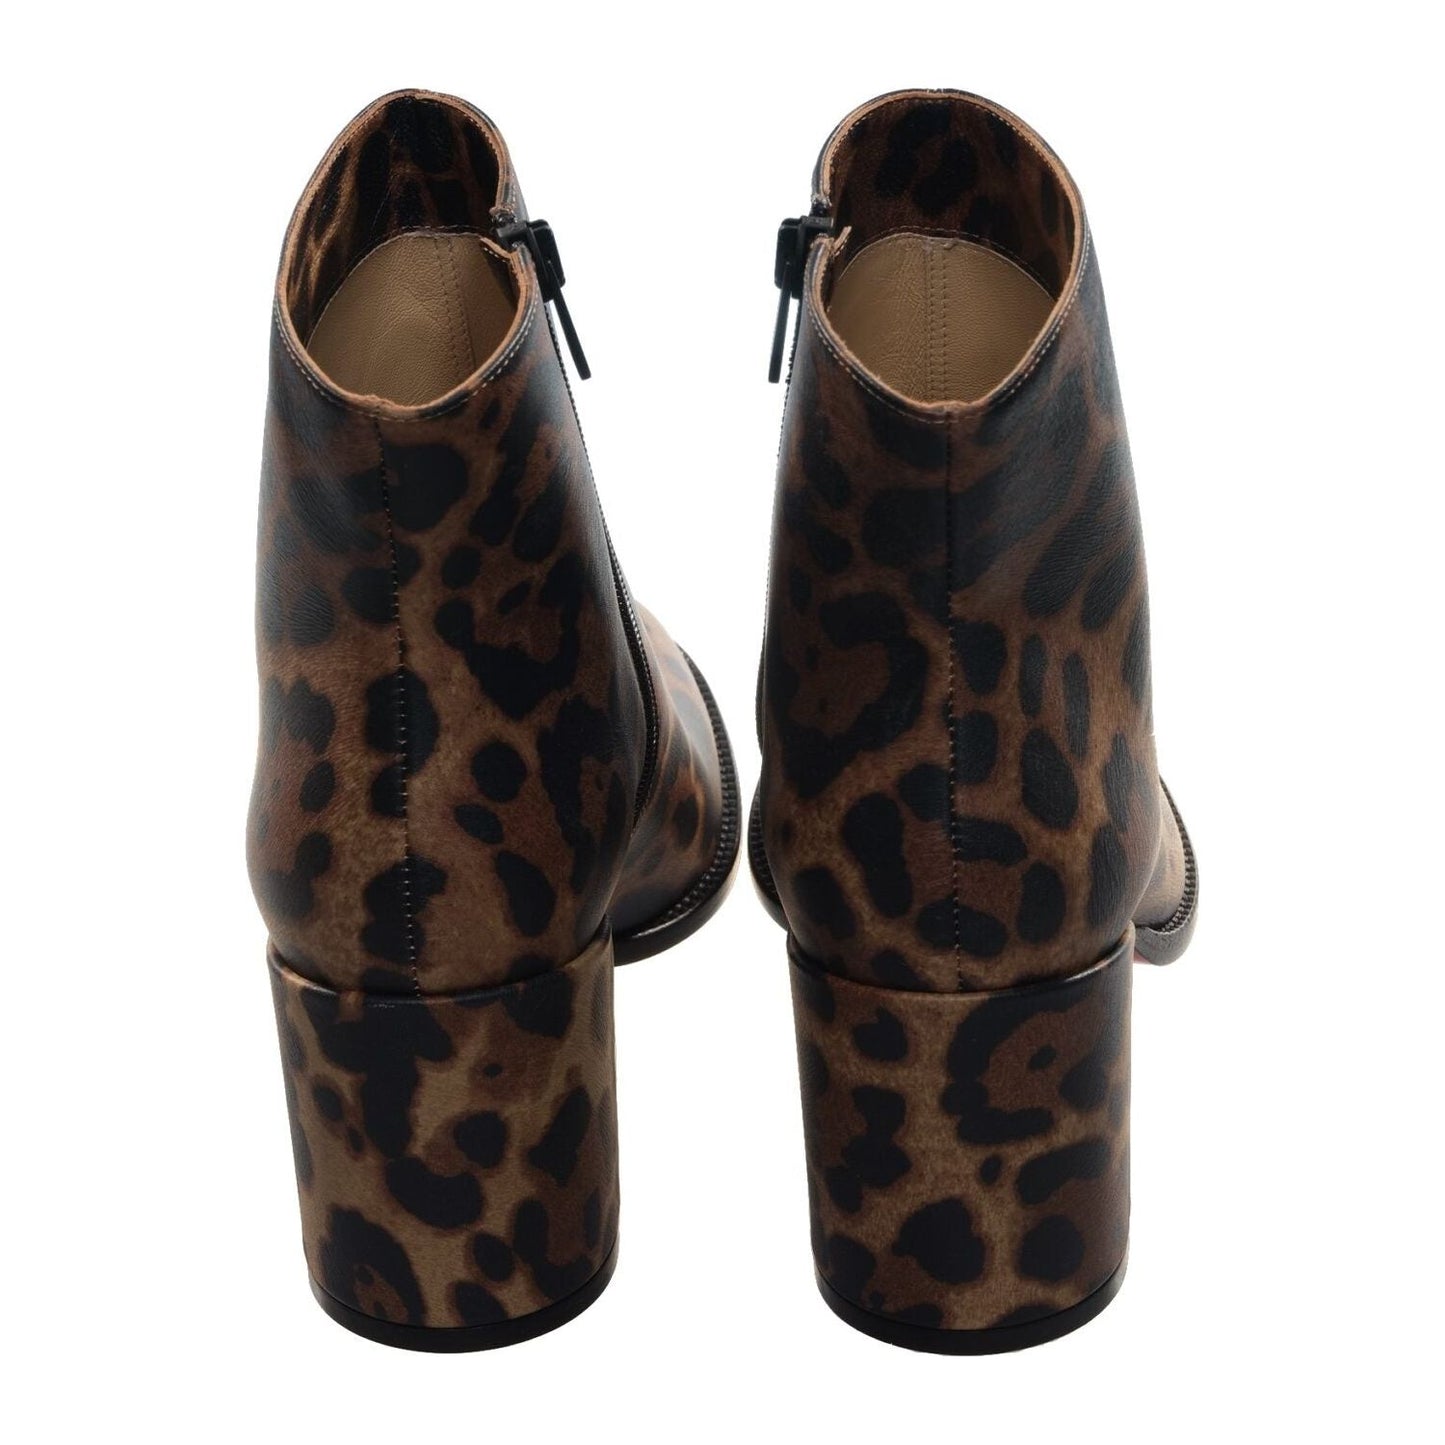 Adoxa 70 Brown Leopard Print High Heel Boot